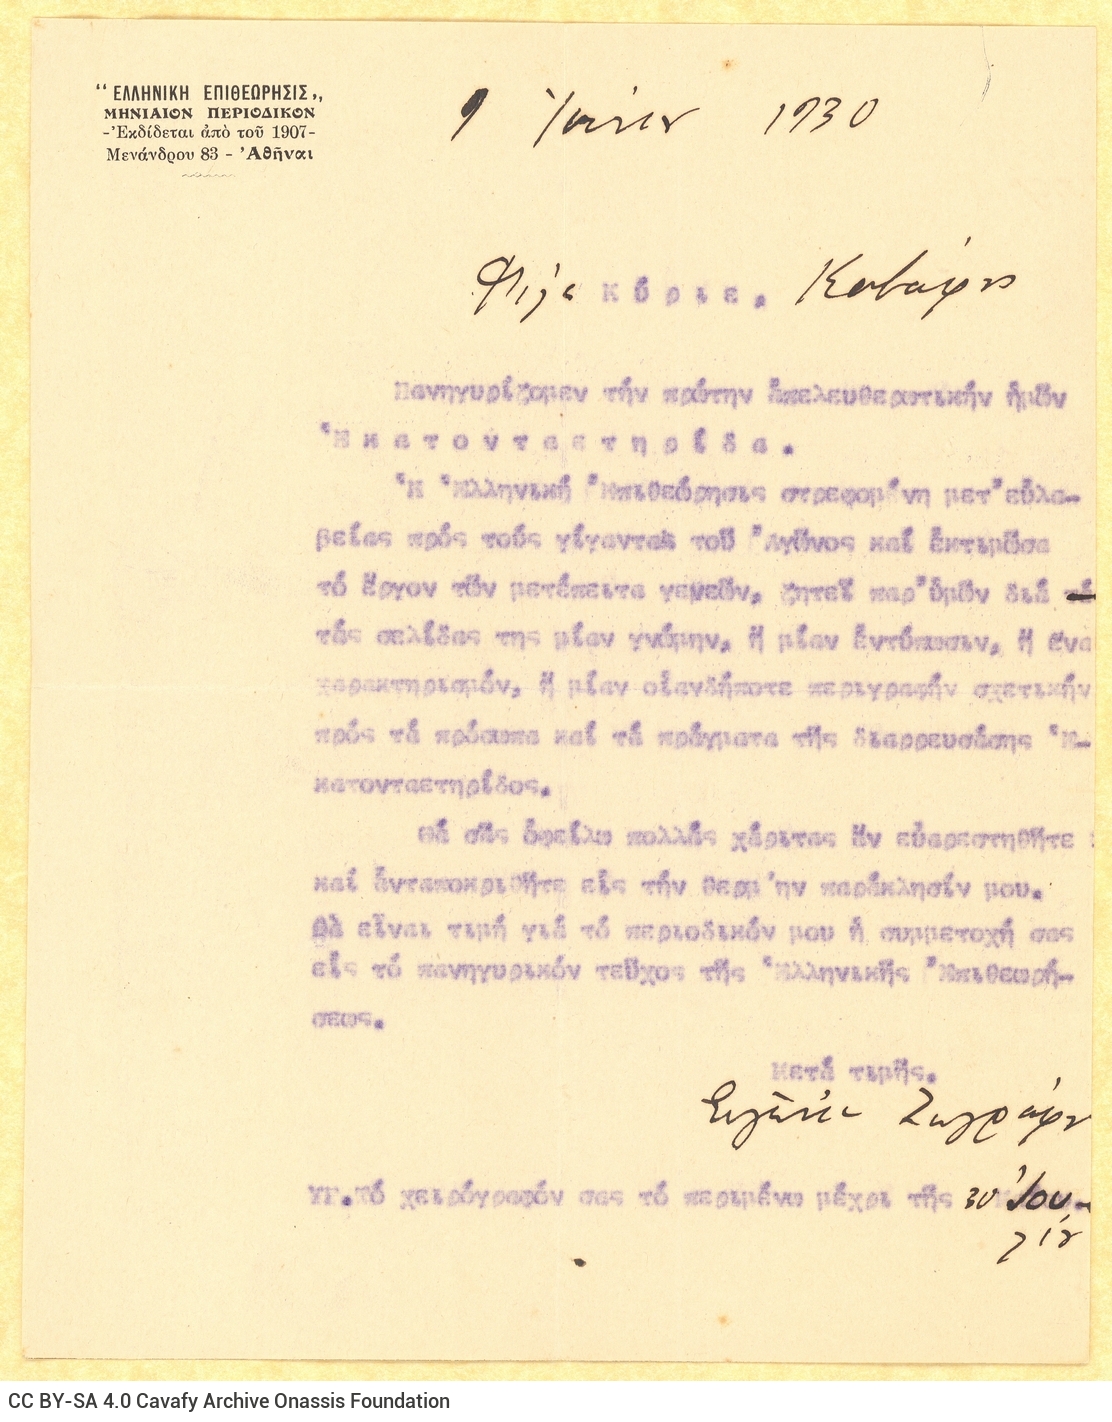 Δακτυλόγραφη επιστολή της Ευγενίας Ζωγράφου προς τον Καβάφη στη μία